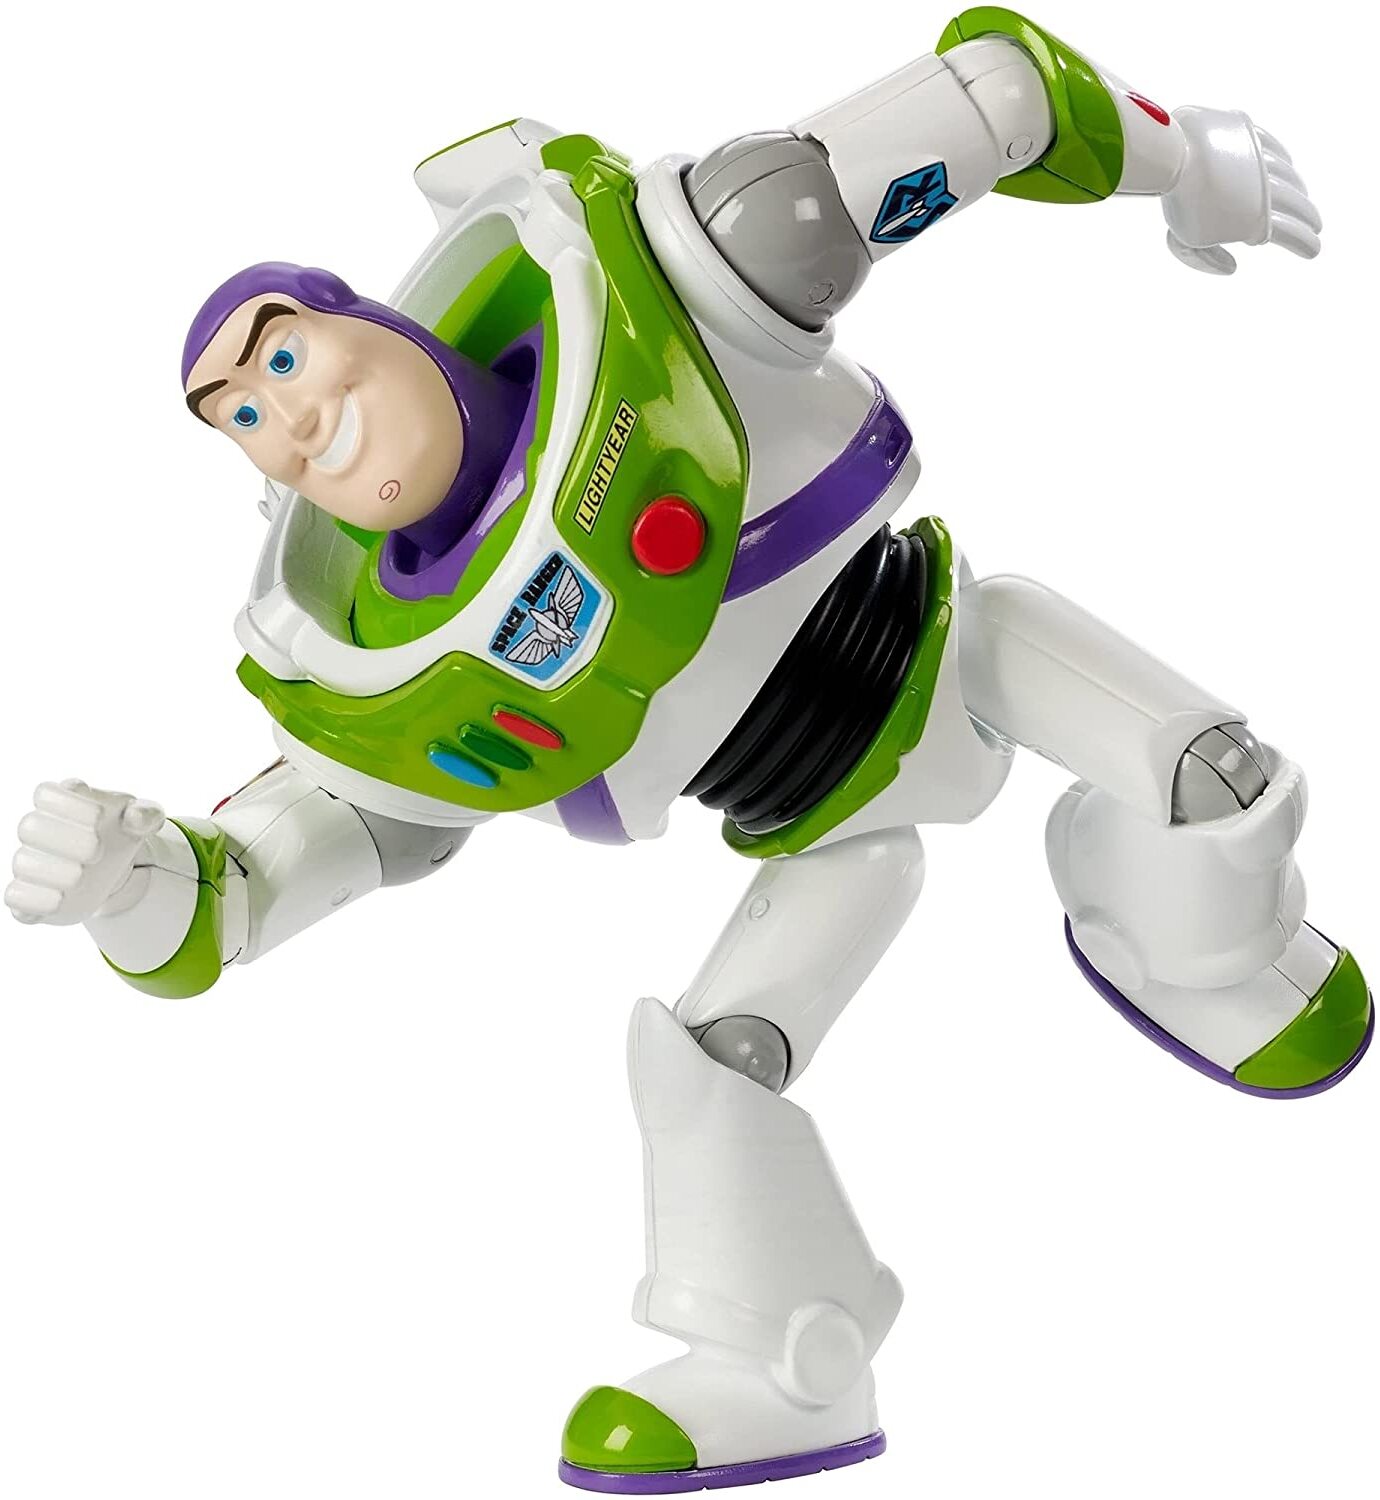 Disney Pixar Toy Story GDP69 - Buzz Lightyear Figur, 18 cm, Spielzeug Actionfigur, tolles Geschenk für Sammler und Kinder ab 3 J